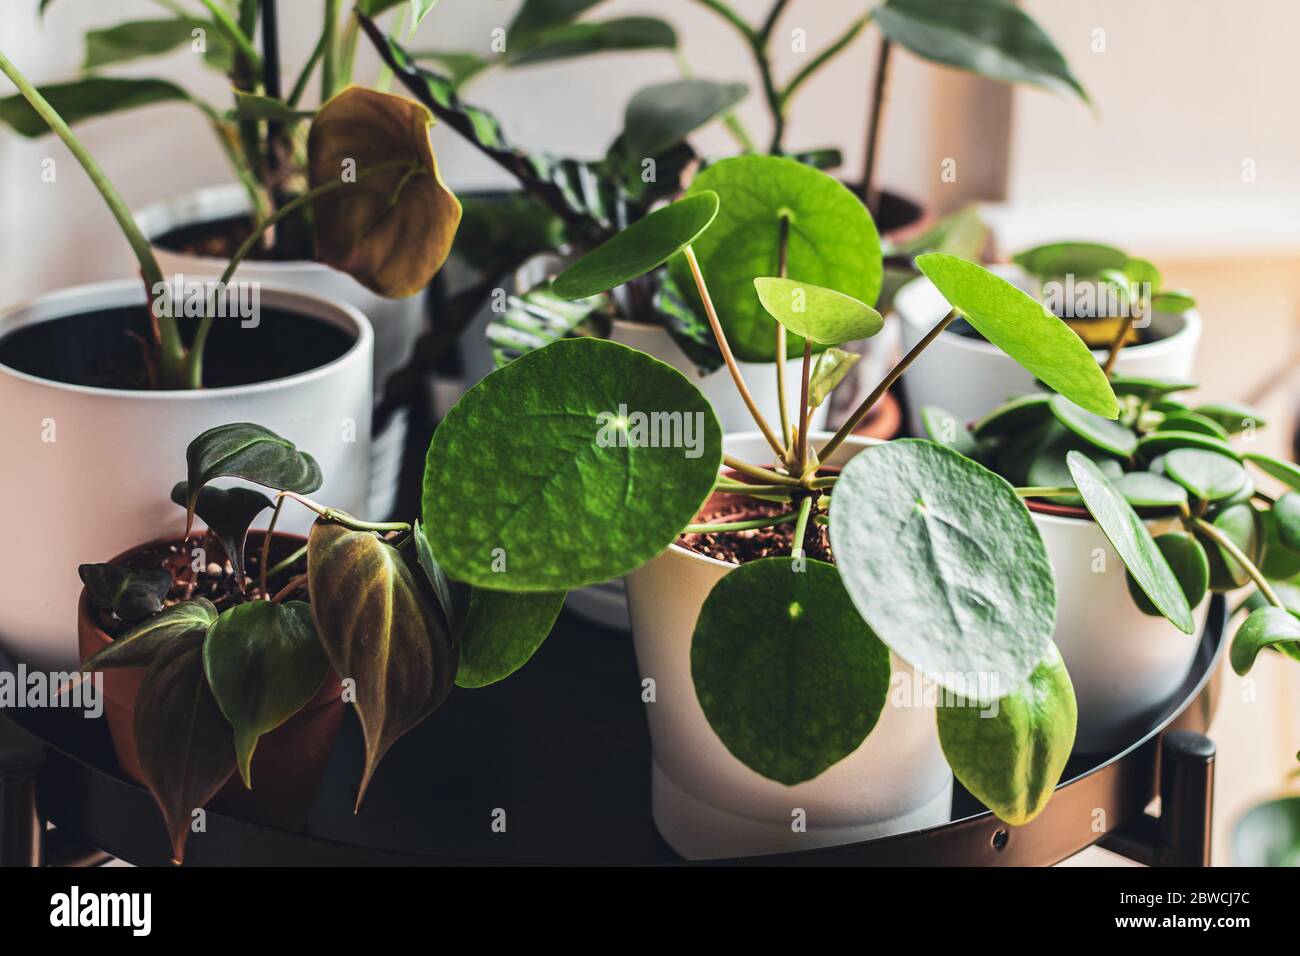 Exotische Zimmerpflanzen in weißen Töpfen auf einem Metallpflanzenstand in einer städtischen Wohnung angeordnet. Stockfoto